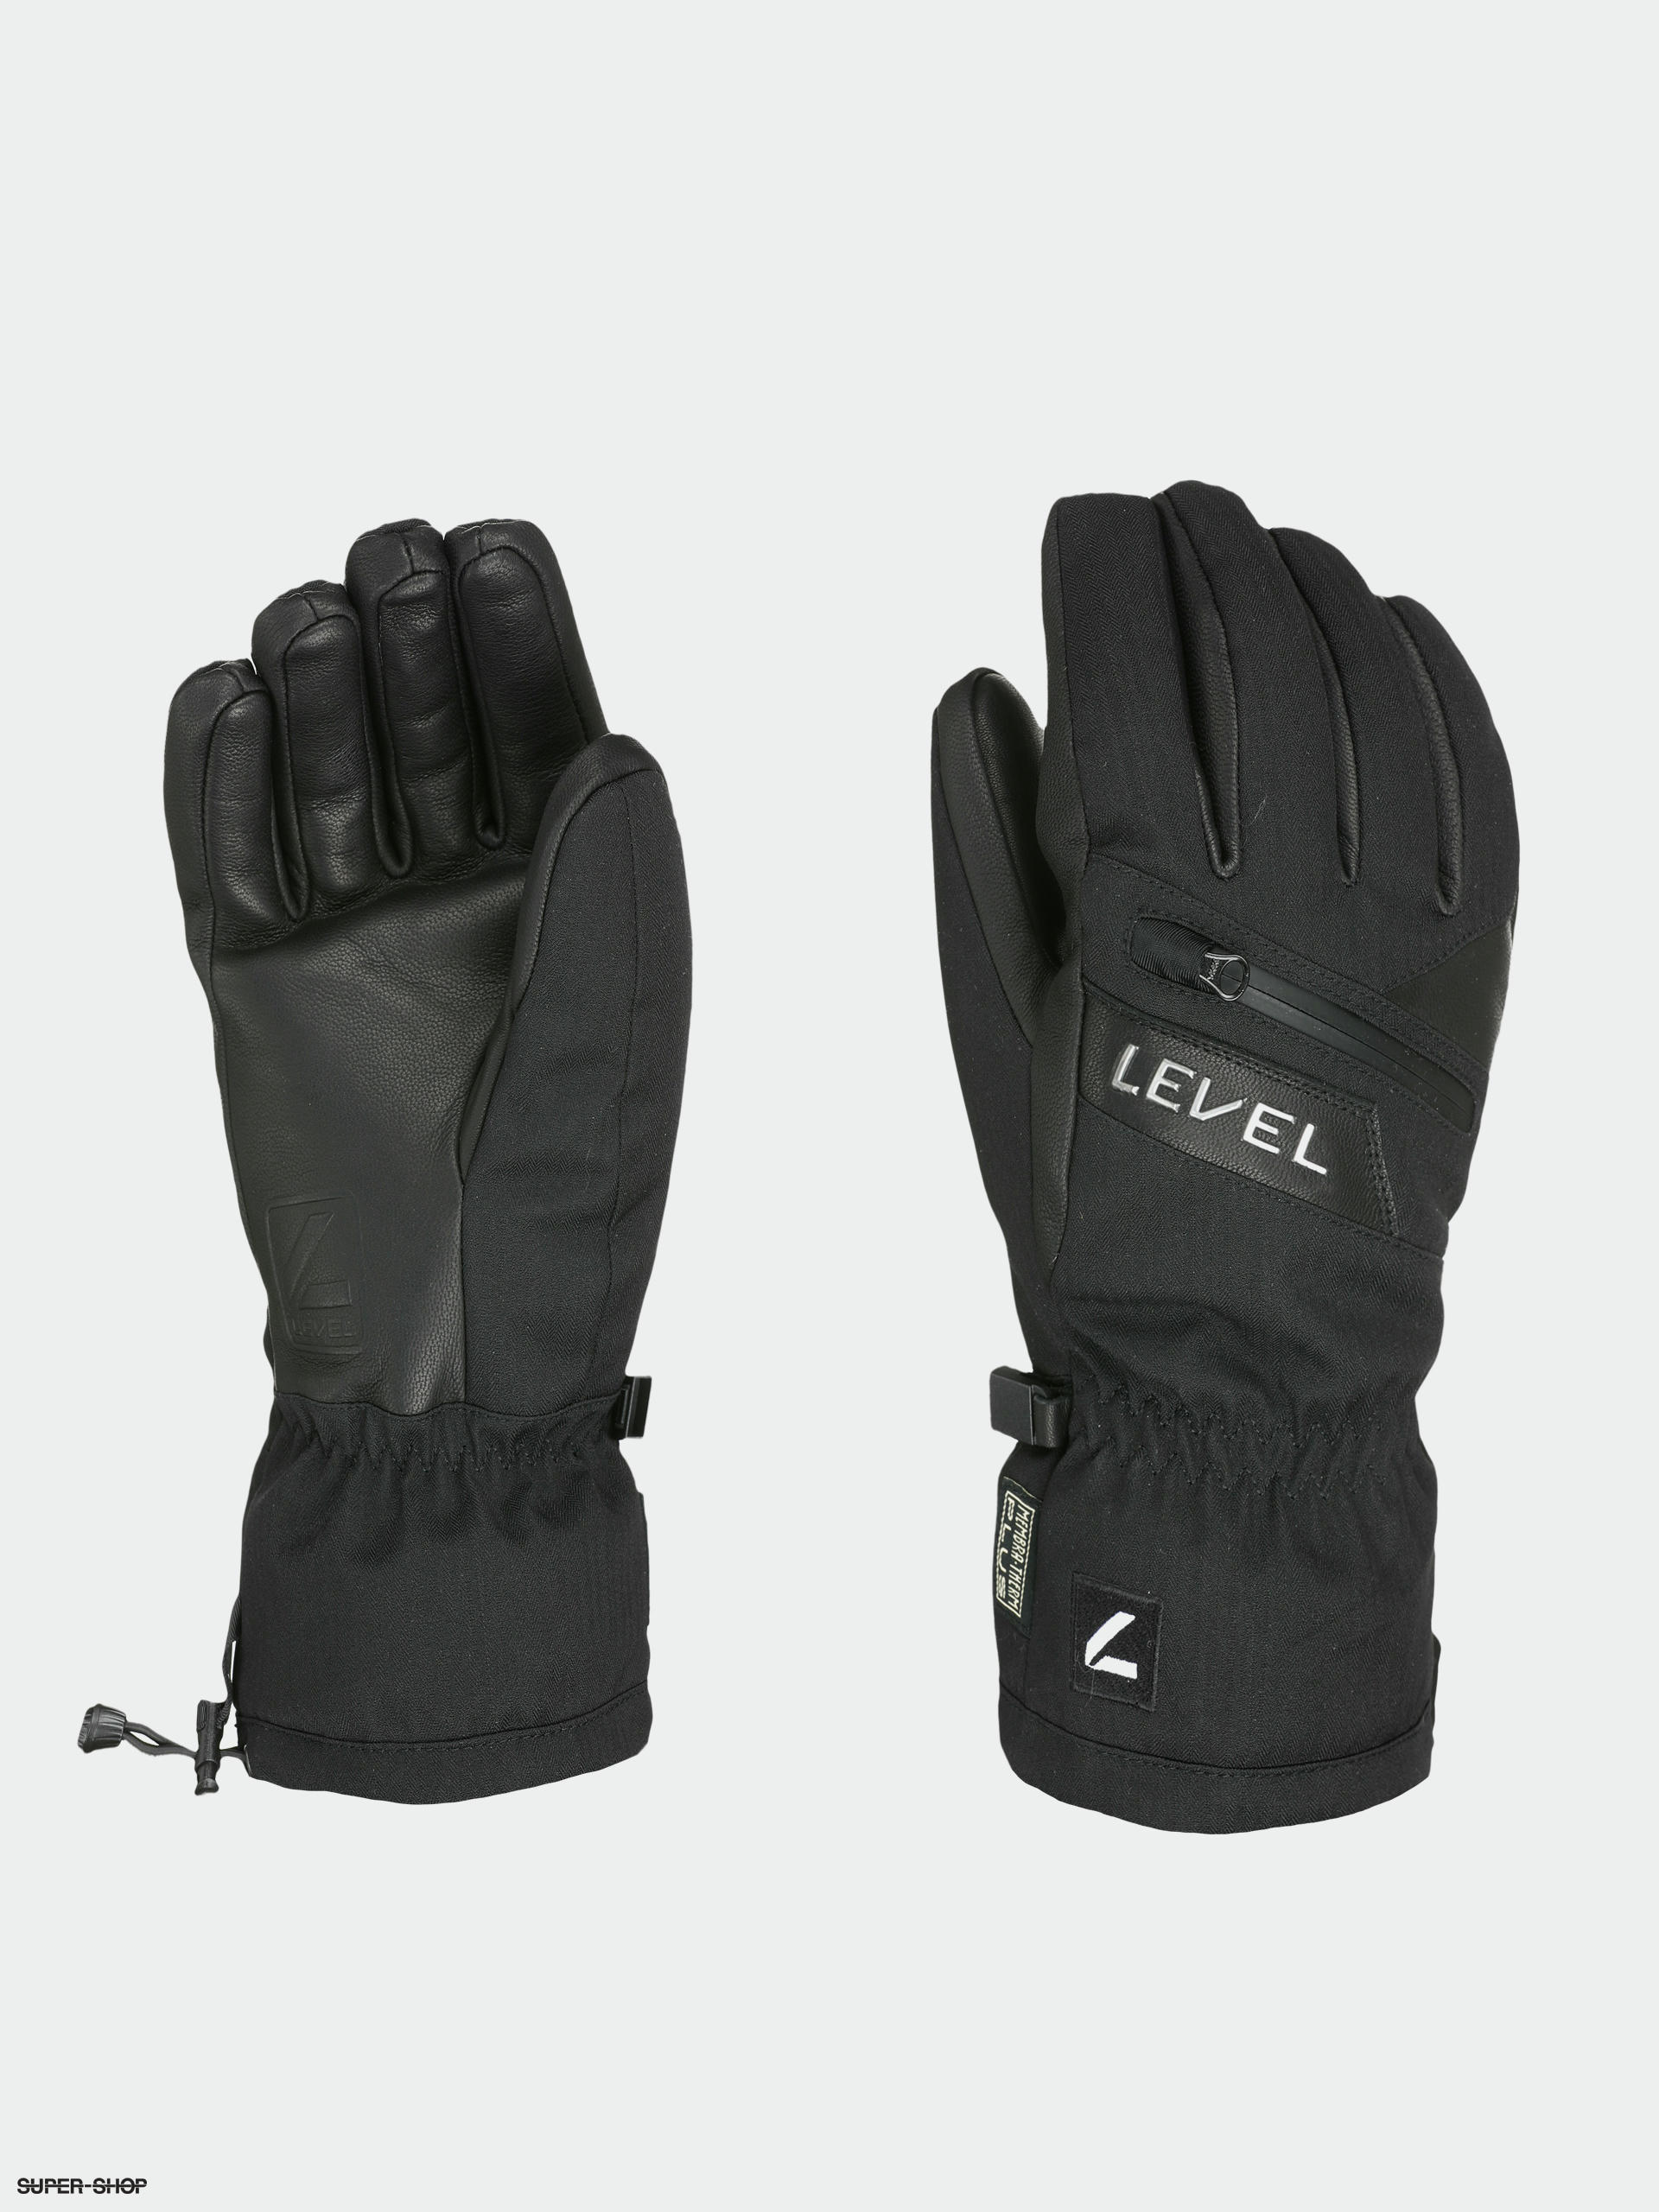 Burton Hi Five Mitten Gloves (tetra orange/true black)